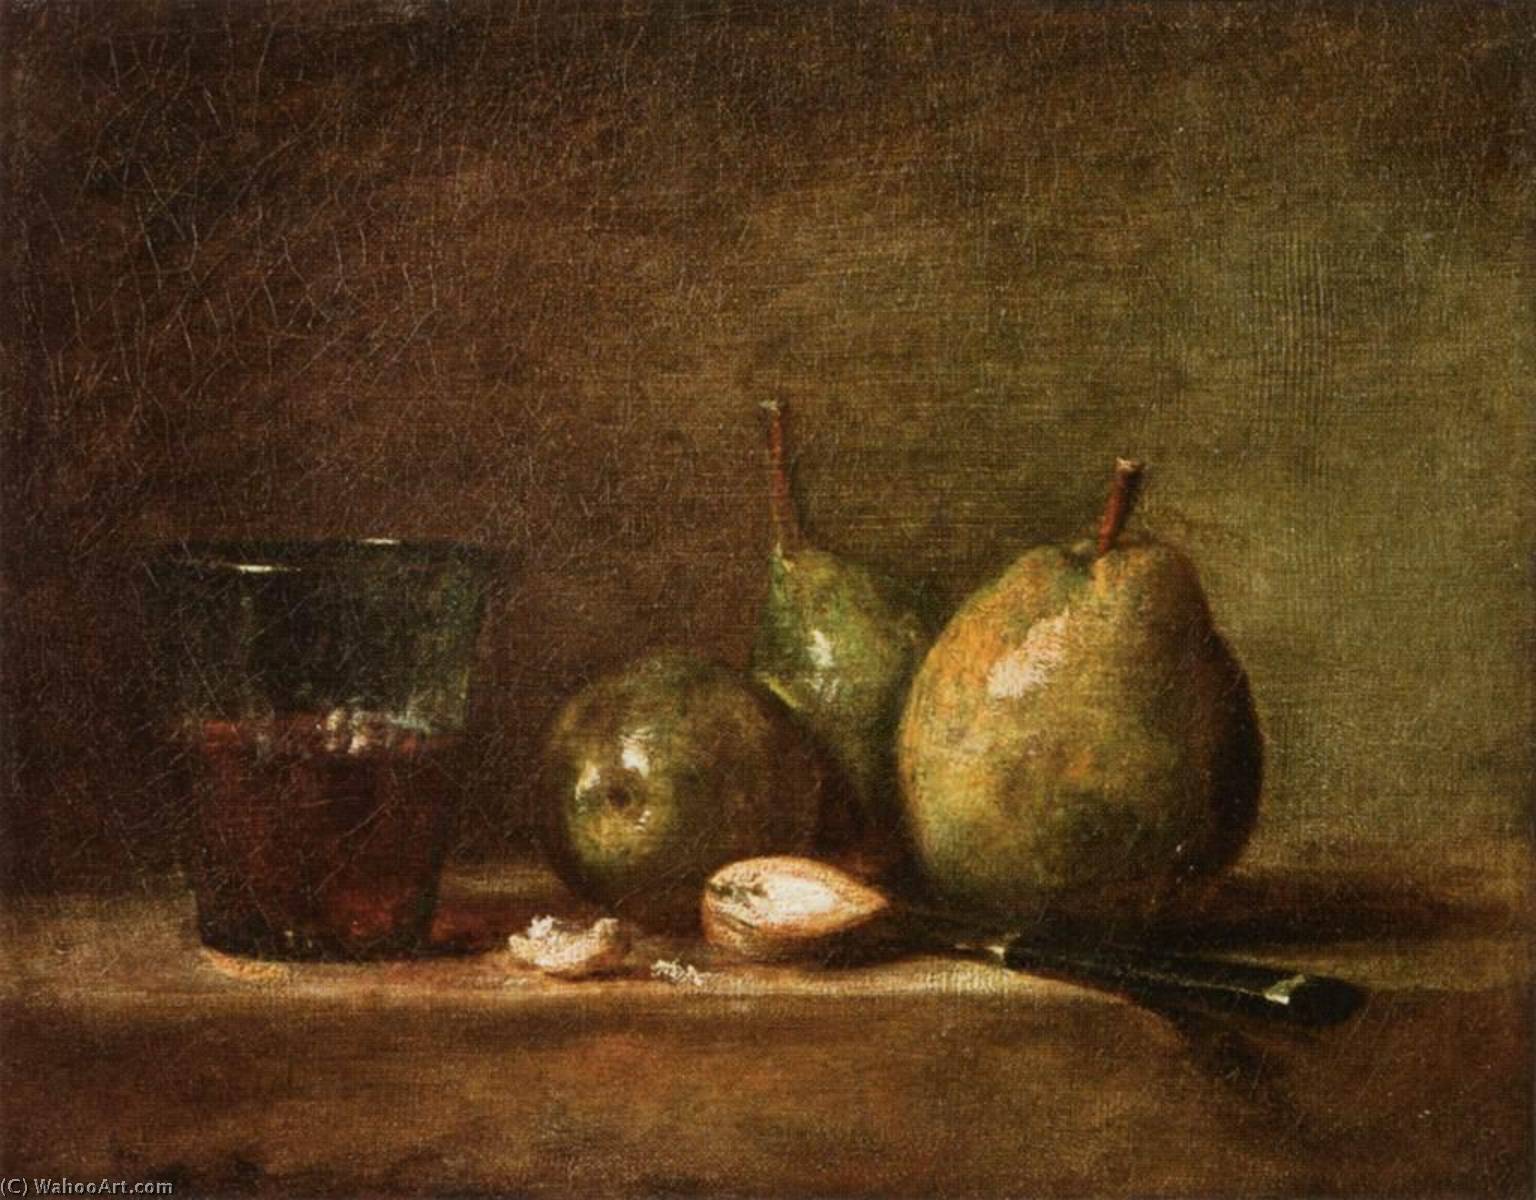 WikiOO.org - Enciclopedia of Fine Arts - Pictura, lucrări de artă Jean-Baptiste Simeon Chardin - Pears, Walnuts and Glass of Wine